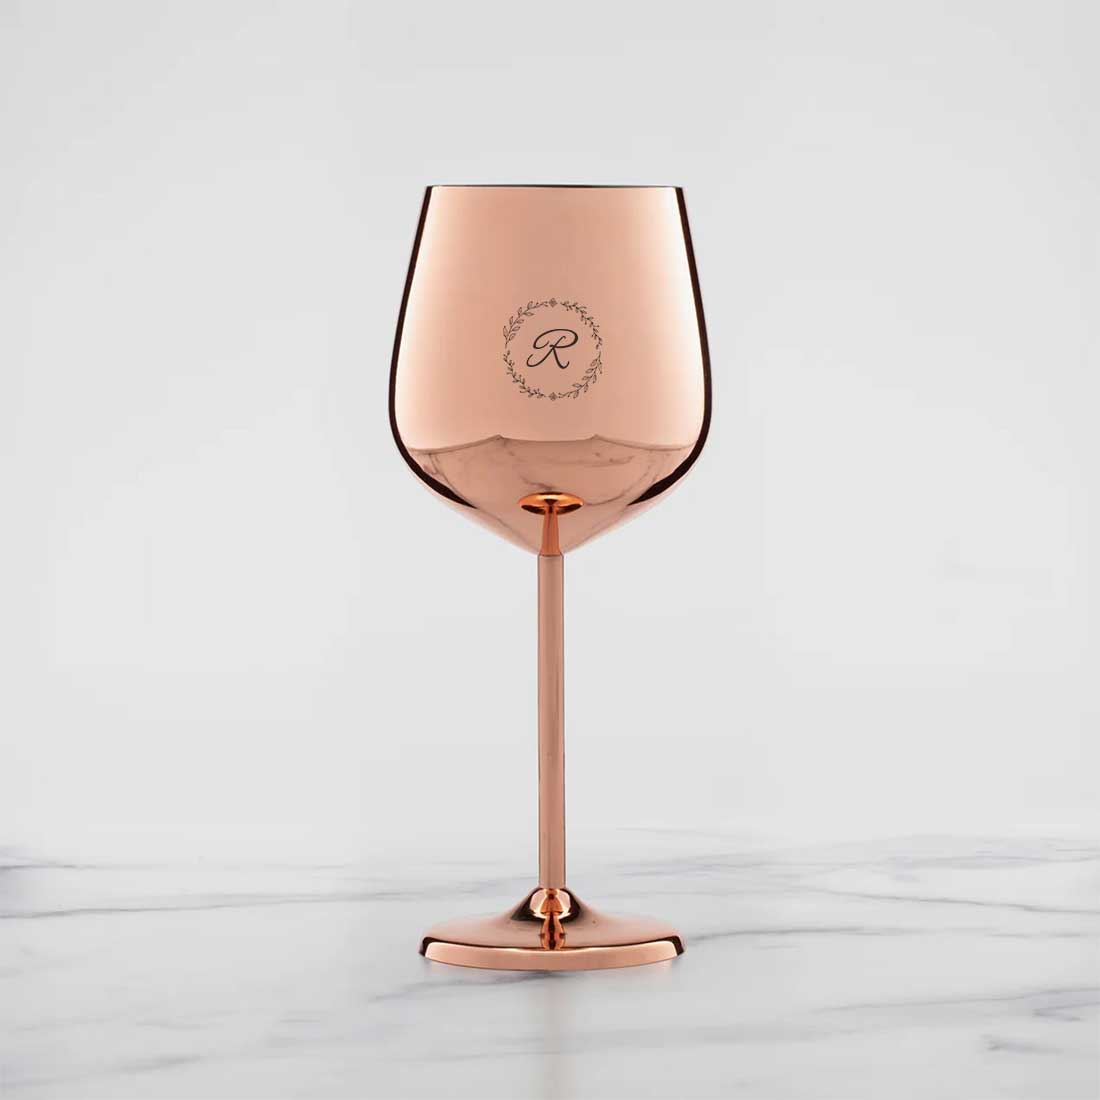 Custom Steel Wine Glasses Copper Finish Goblets